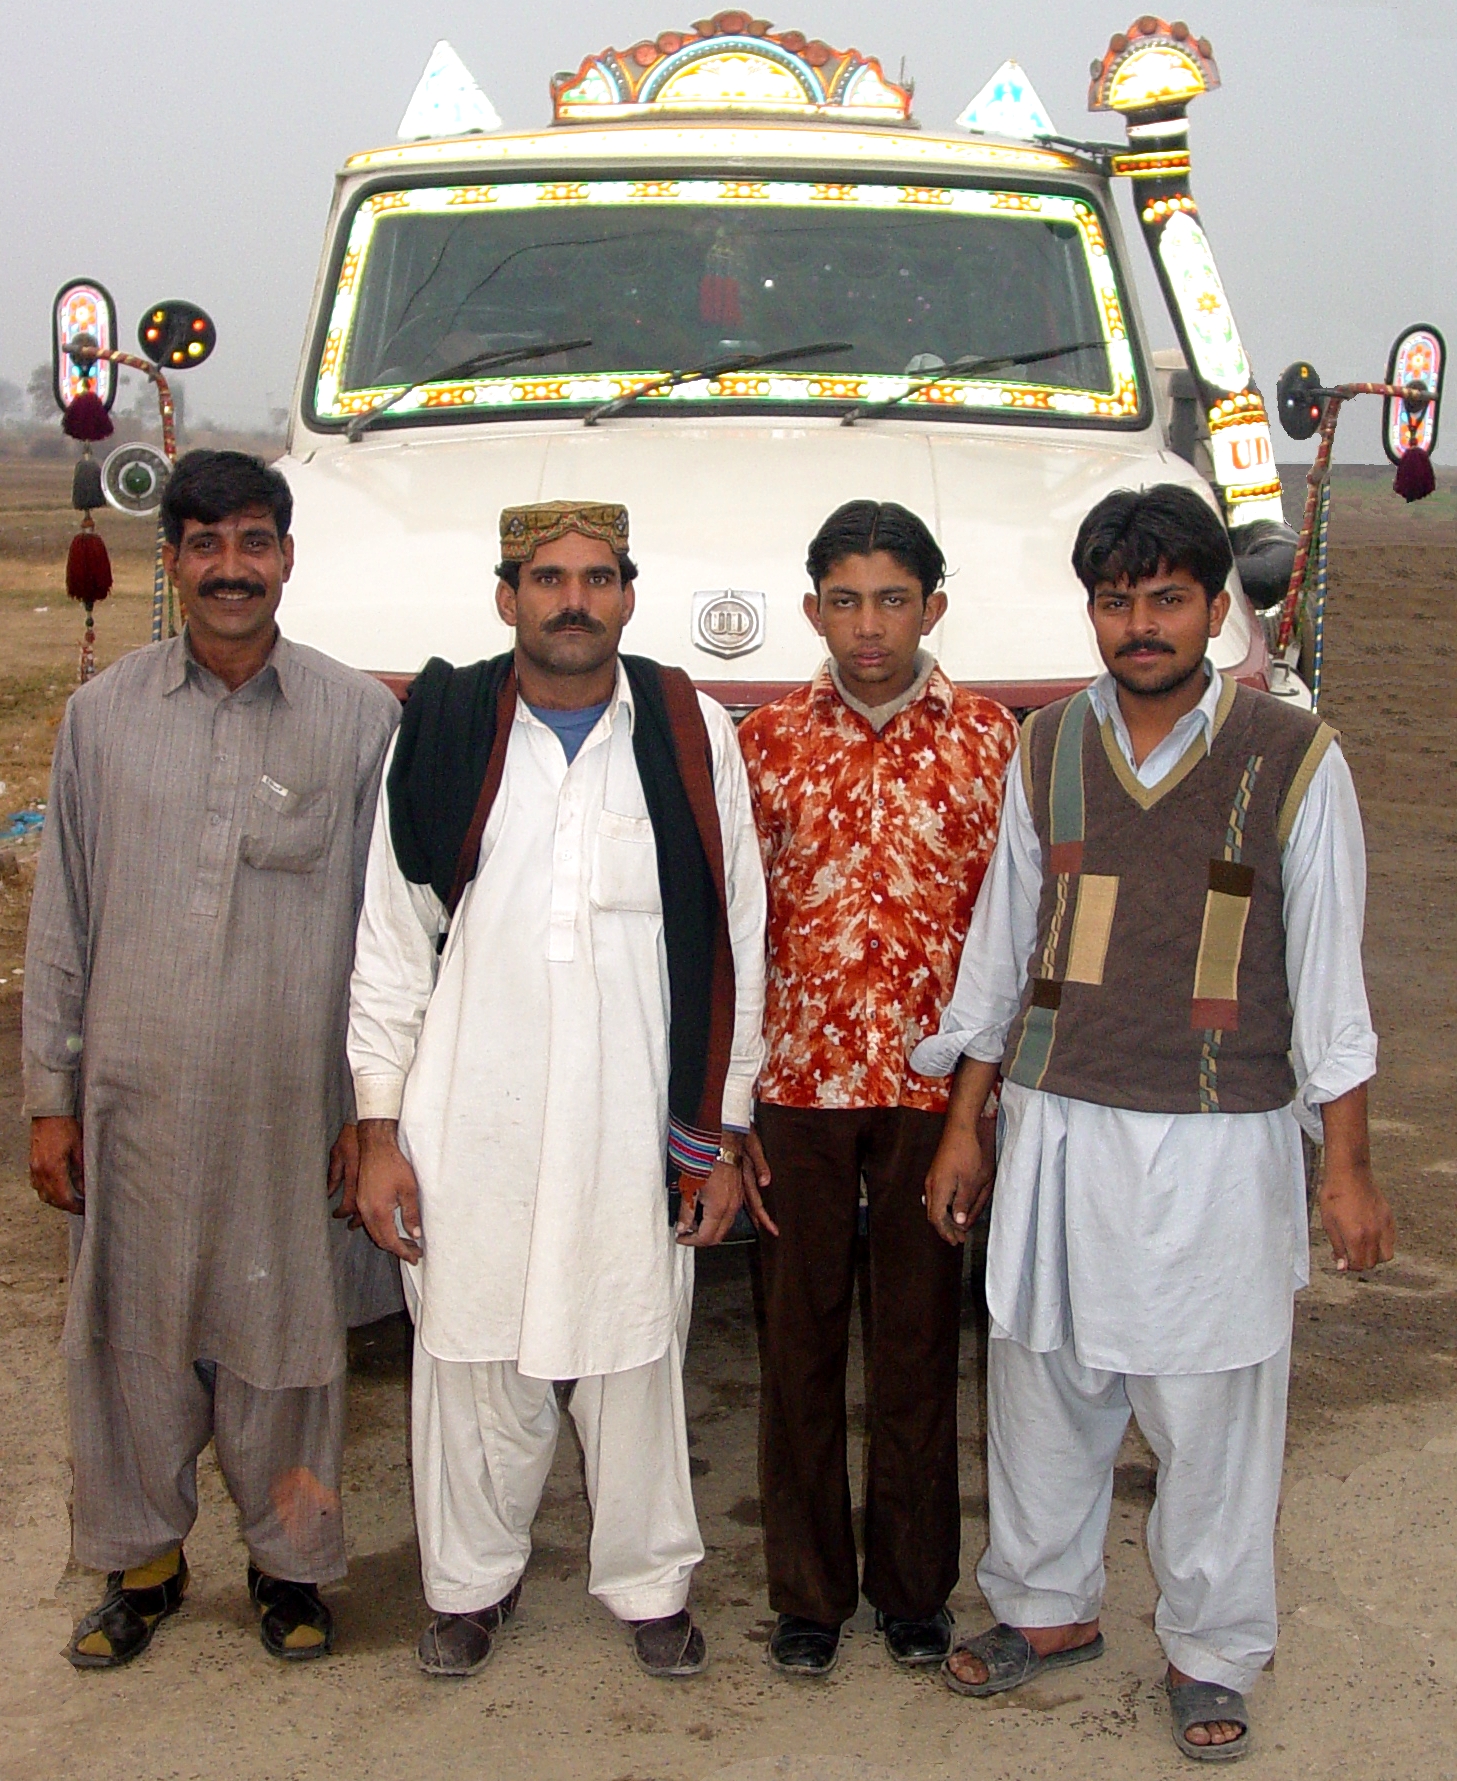 Pakistan truck drivers